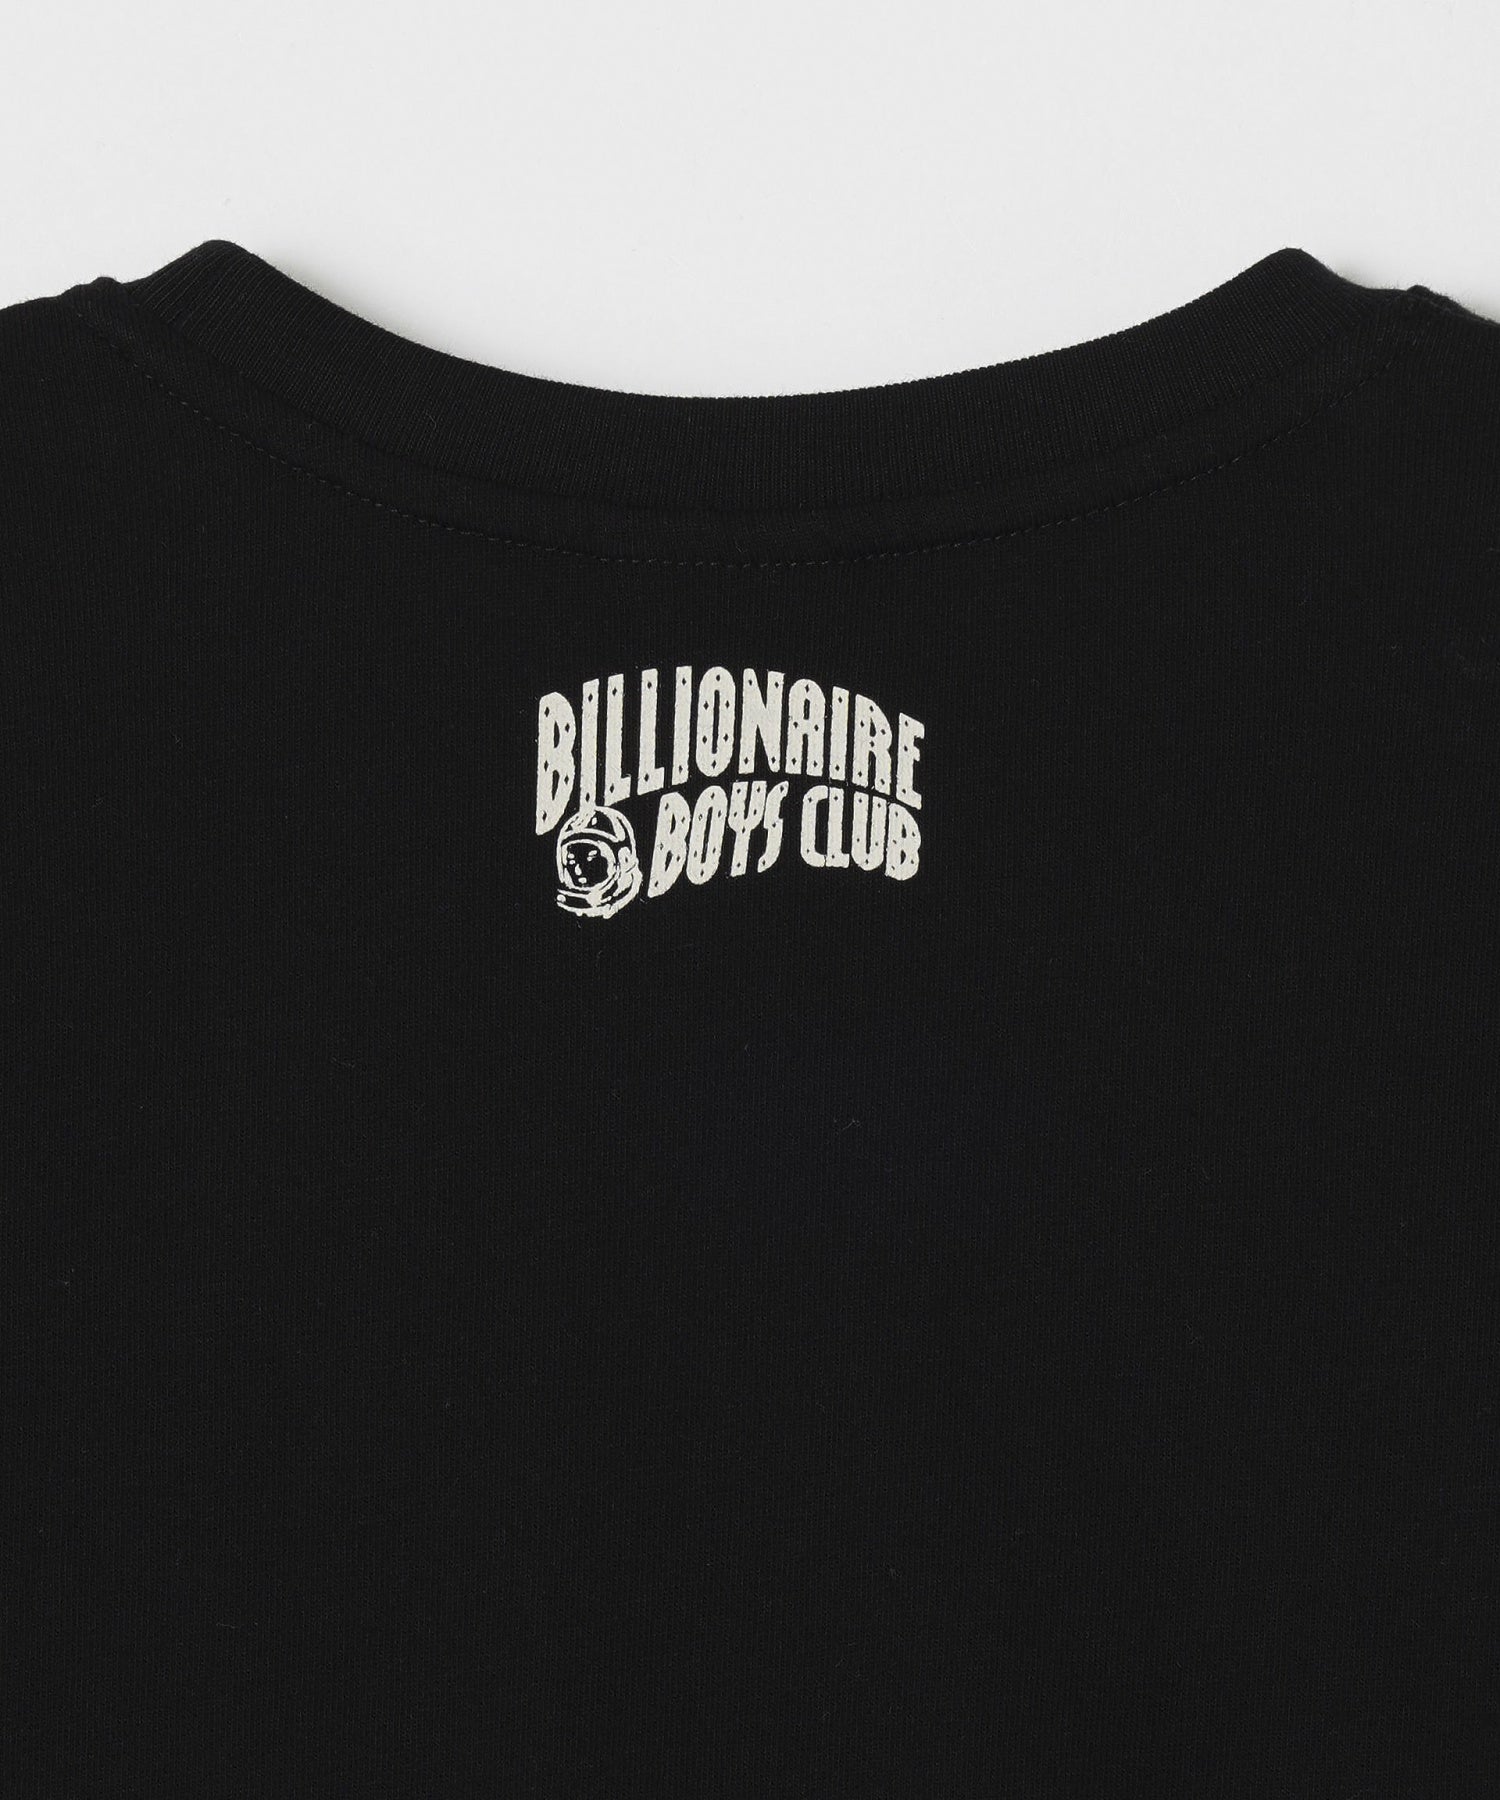 BILLIONAIRE BOYS CLUB/ビリオネア・ボーイズ・クラブ/BB MARIGOLD T-SHIRT/841-3202